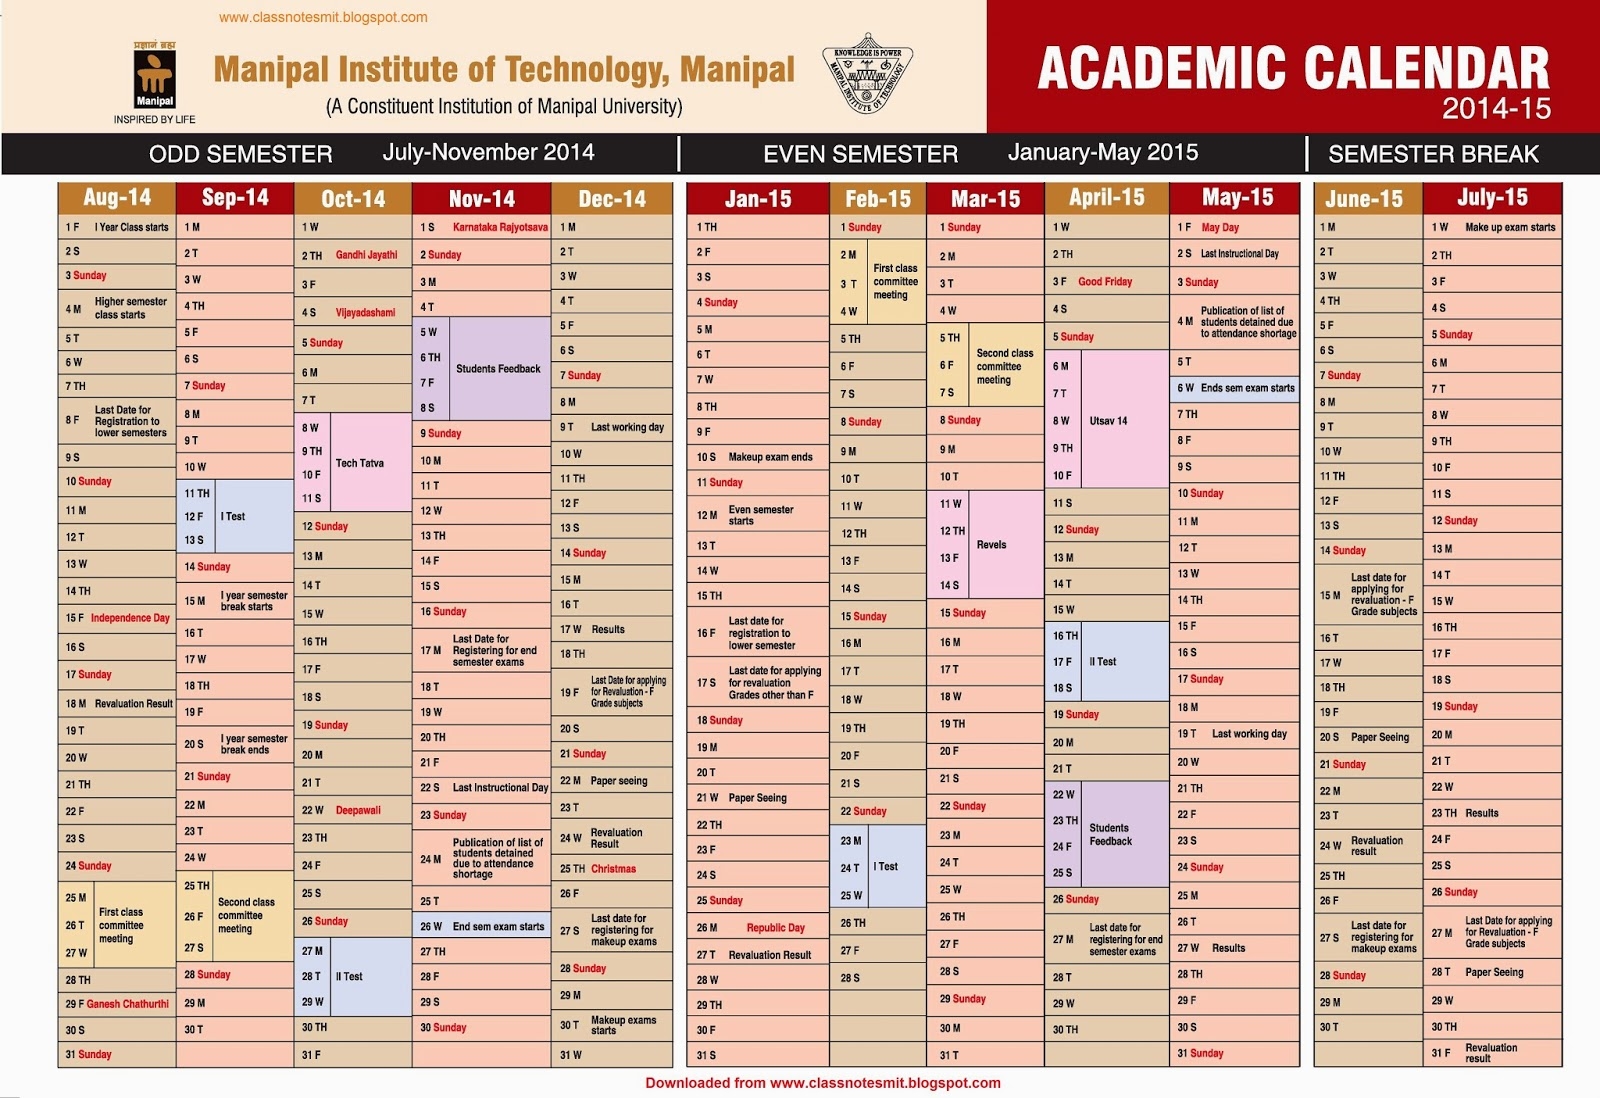 Mit Academic Calendar Qualads